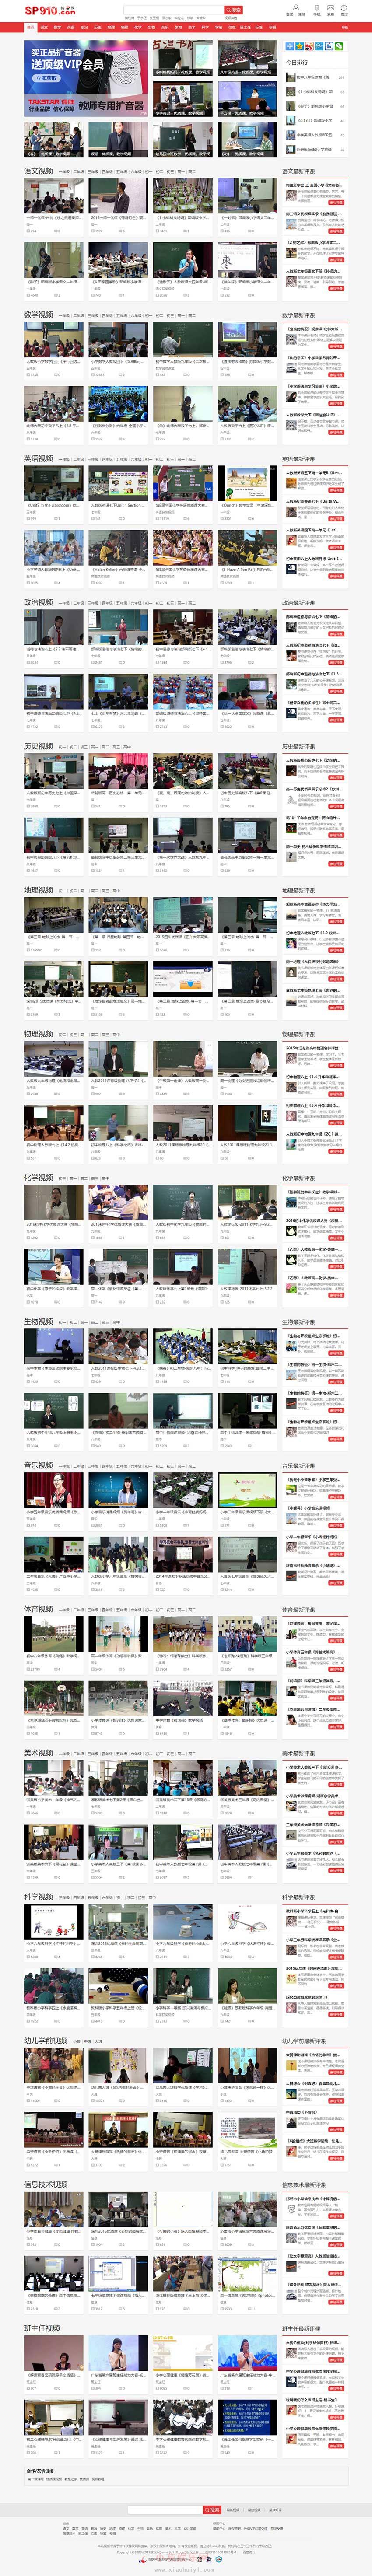 帝国CMS《教视网》在线教学视频网站源码